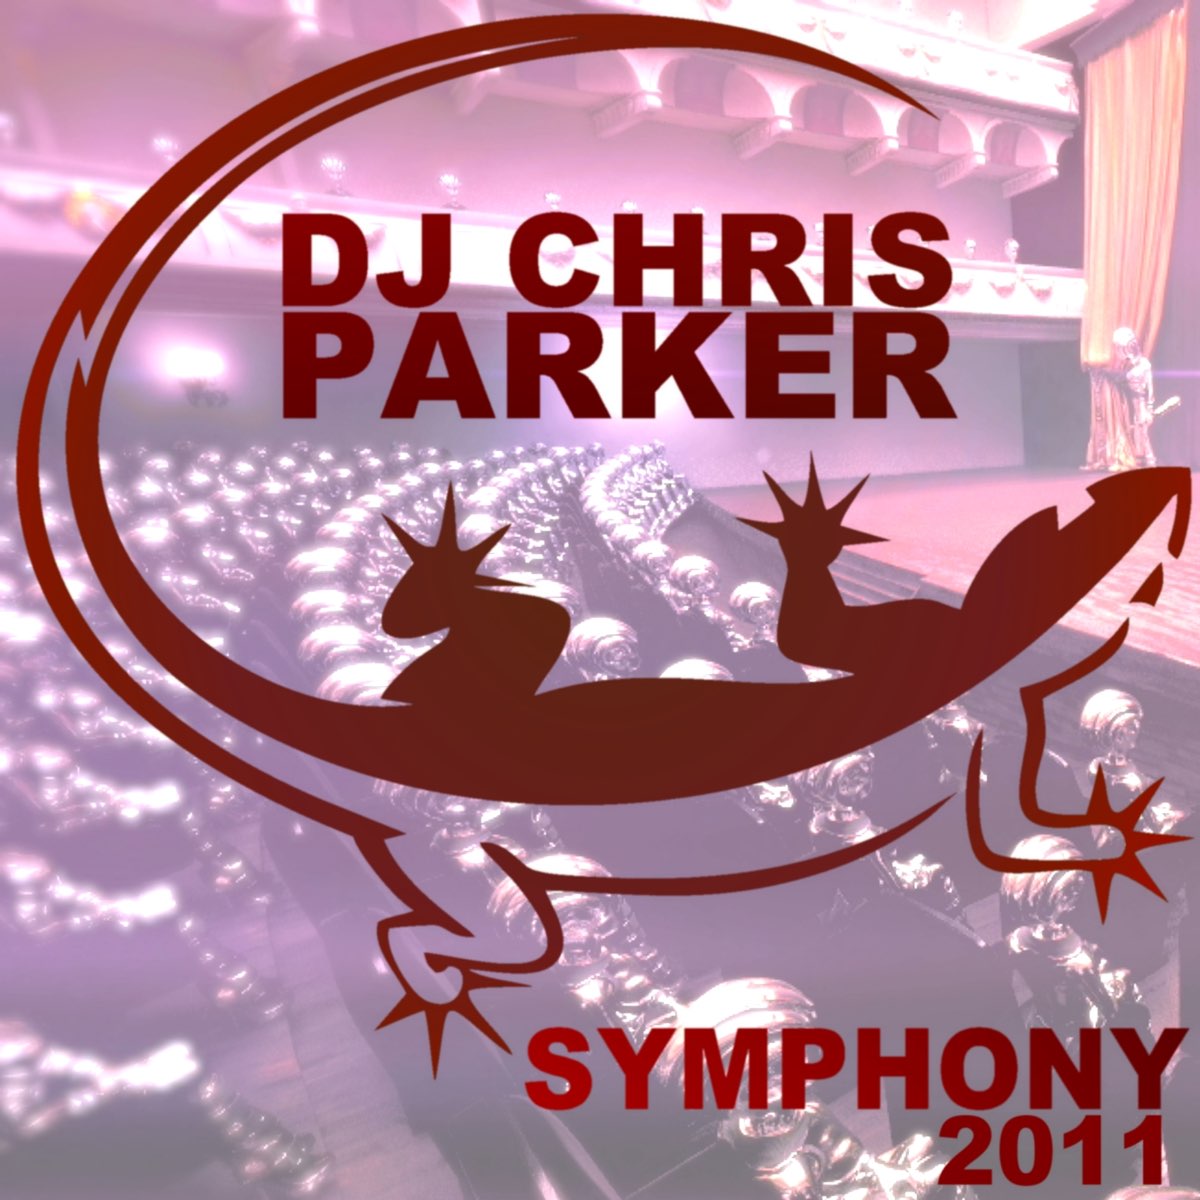 Паркер симфония. Chris Parker Symphony. DJ Chris Parker - Symphony. Symphony 2011. Chris Parker обложка.